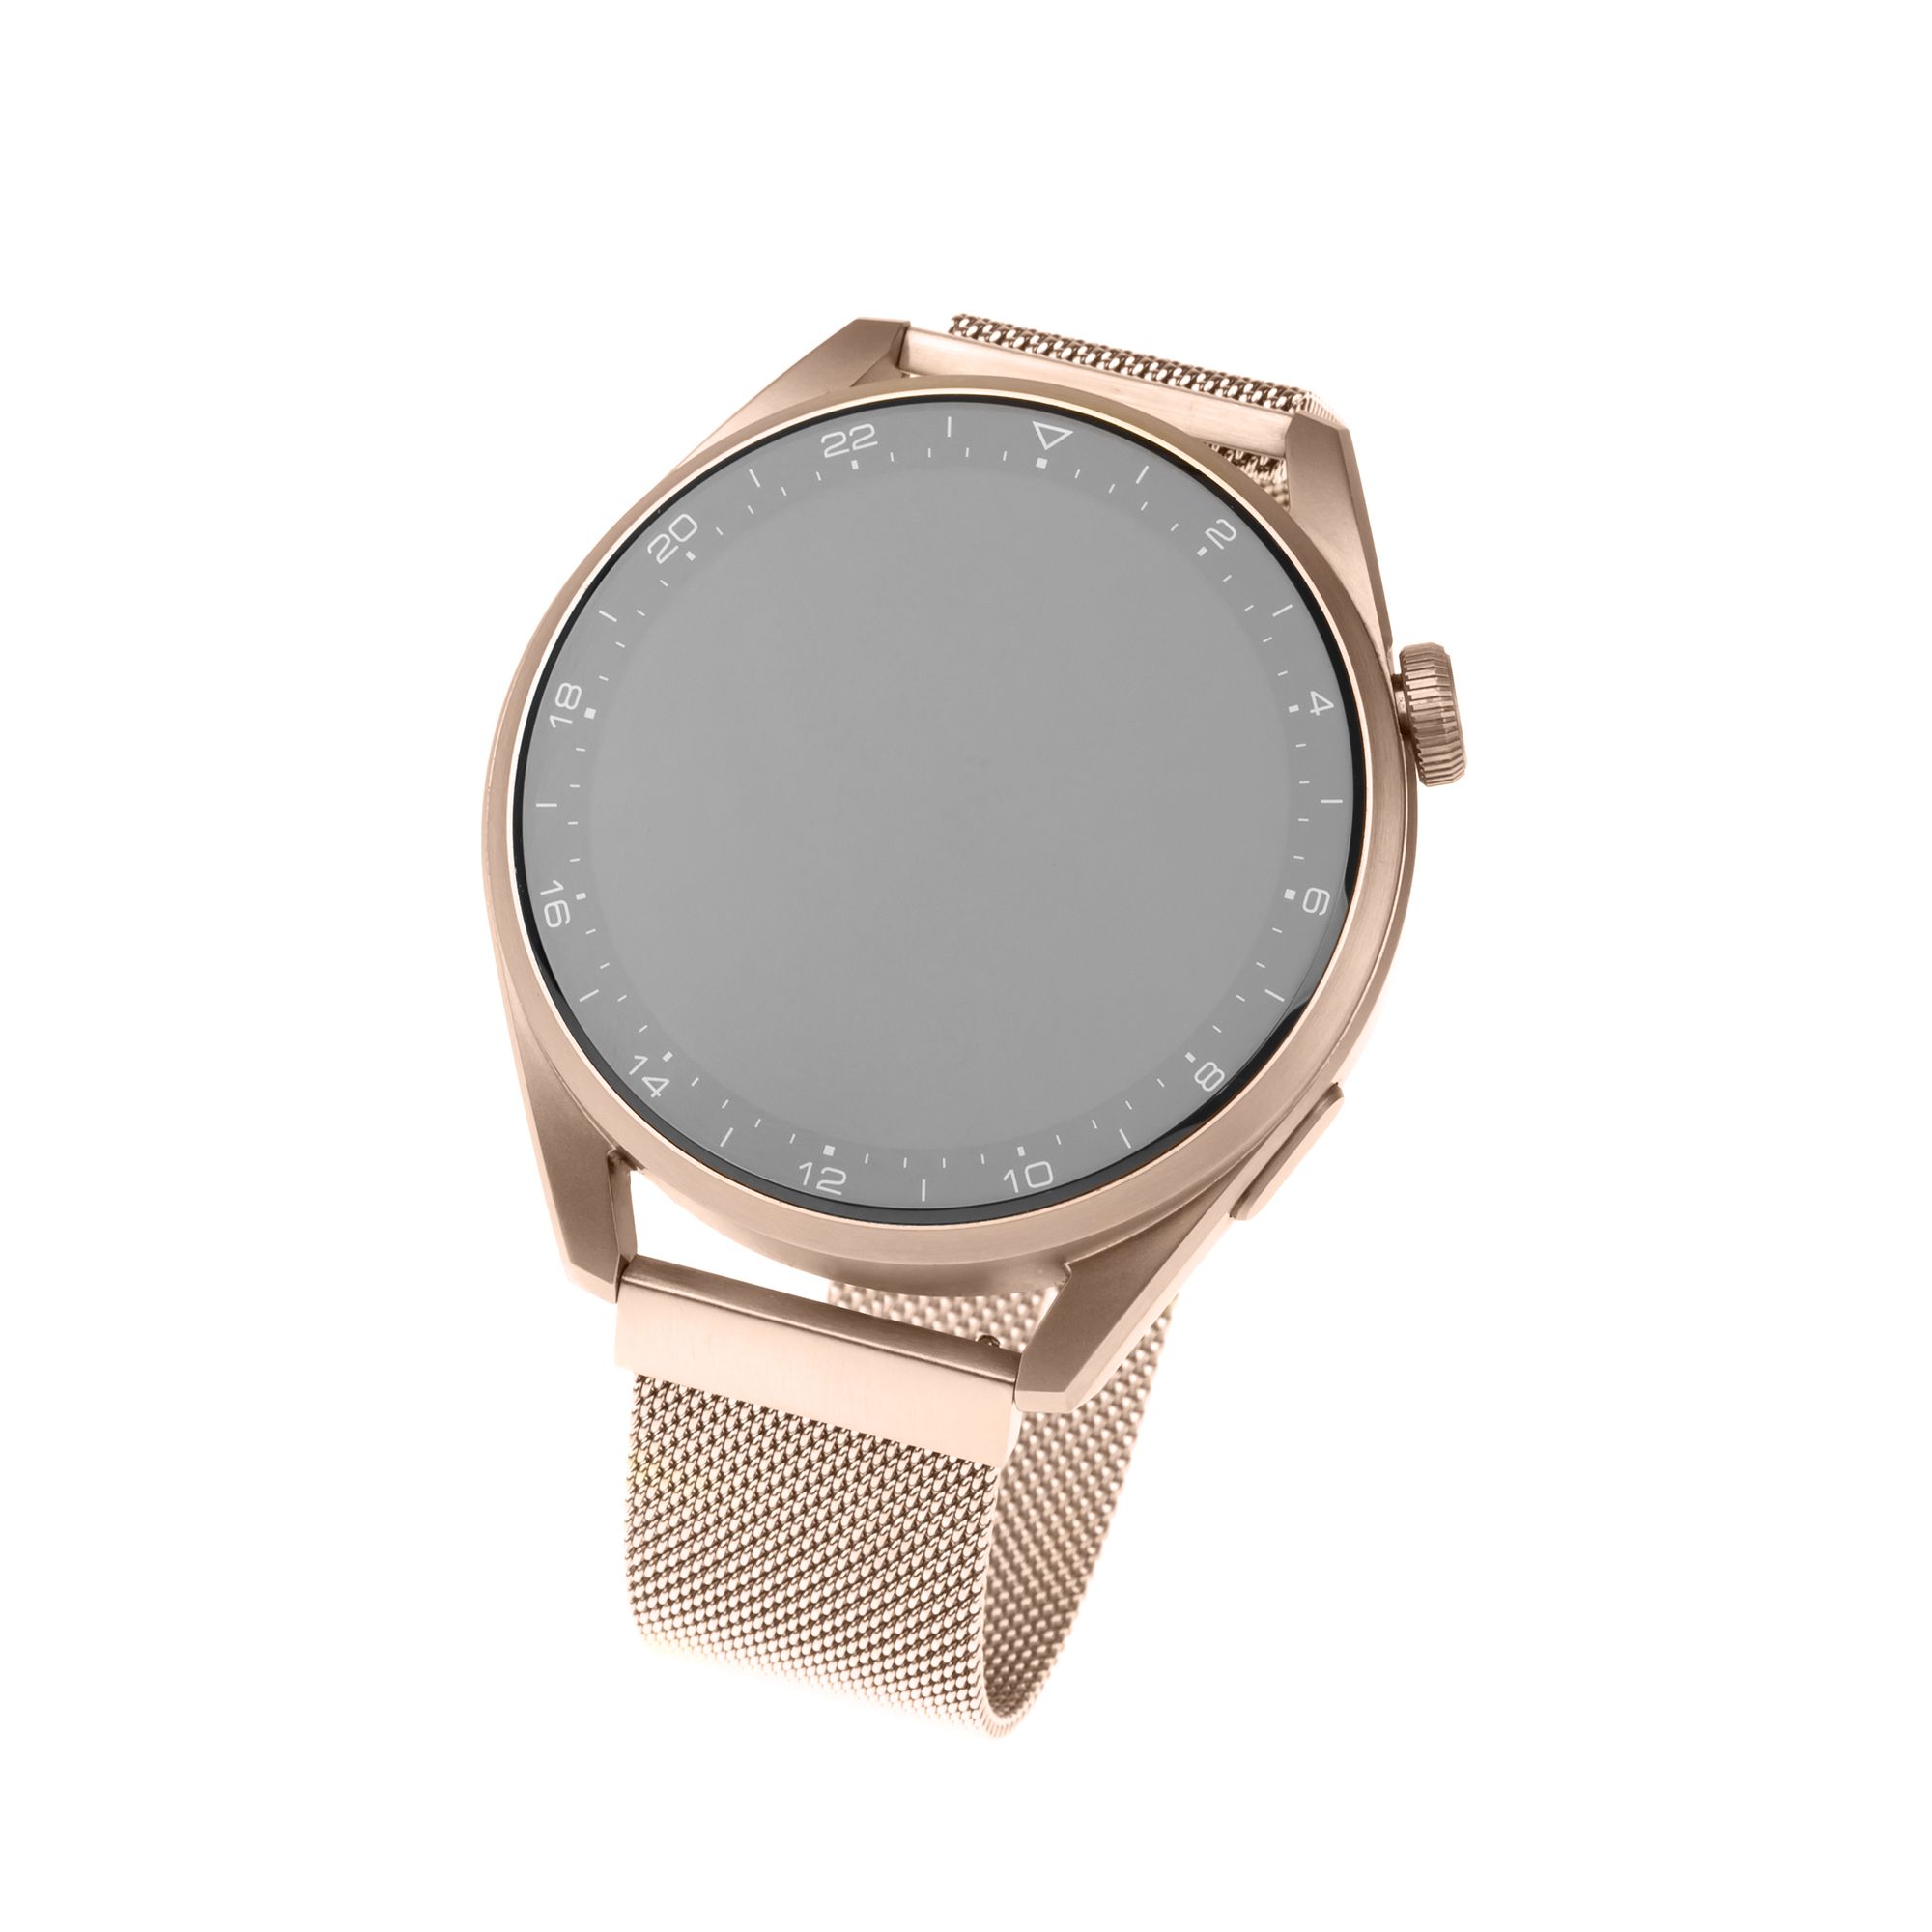 Síťovaný nerezový řemínek Mesh Strap s Quick Release 20mm pro smartwatch, růžové zlatý